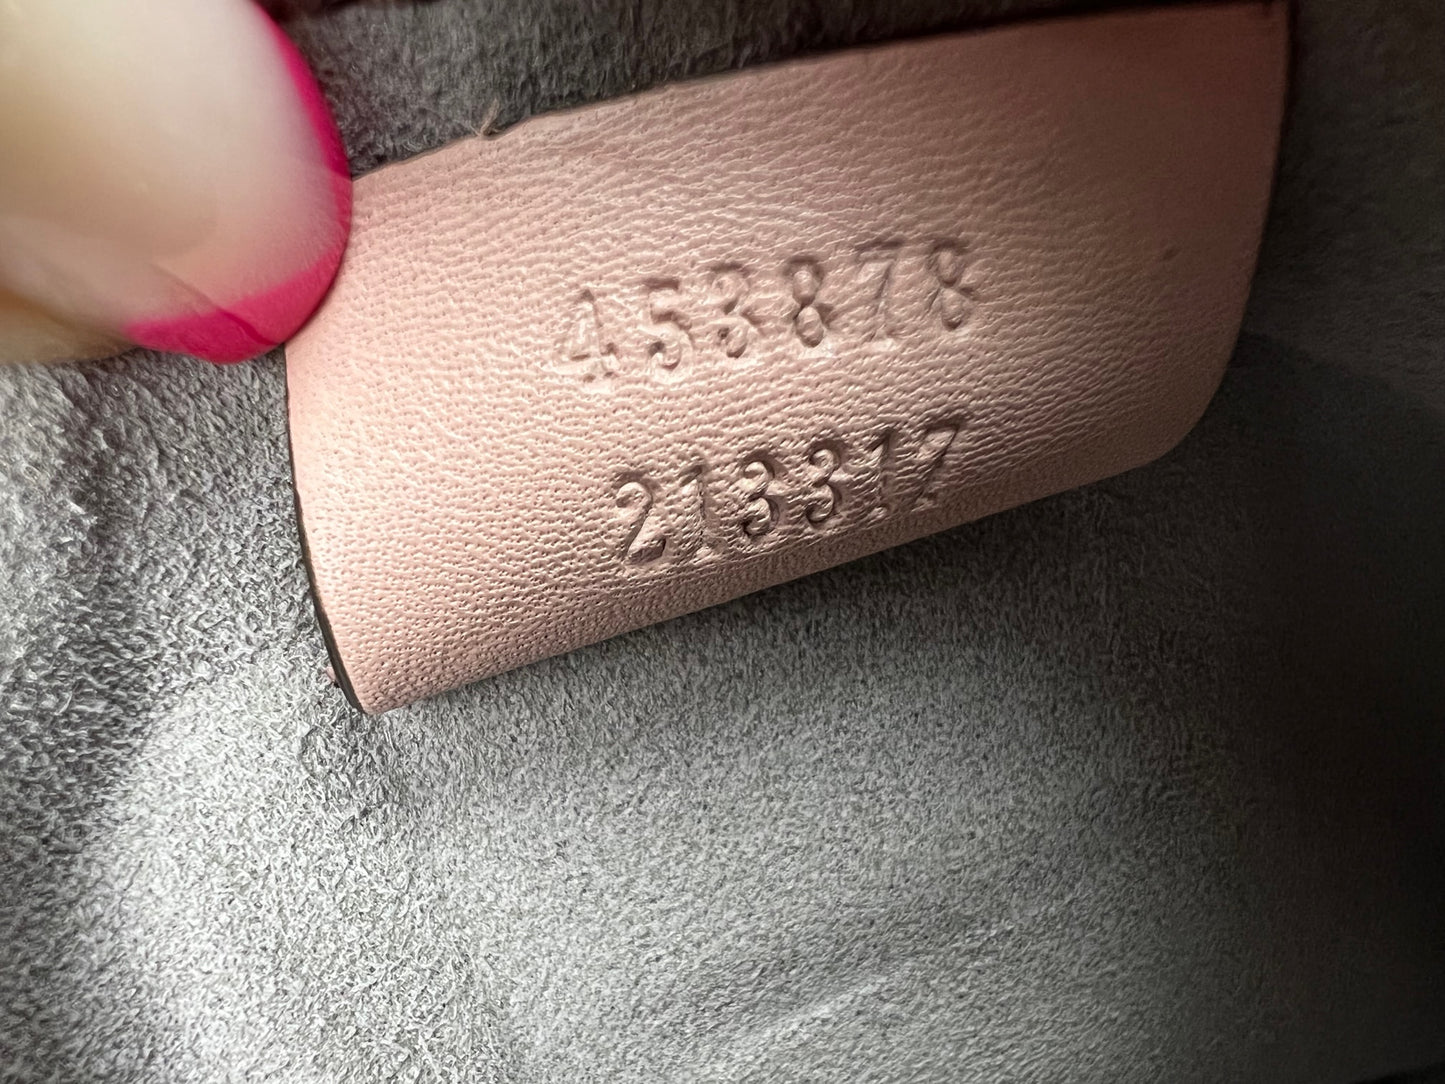 GUCCI Calfskin Matelasse Small GG Marmont Double Zip Shoulder Bag Pink –  Debsluxurycloset